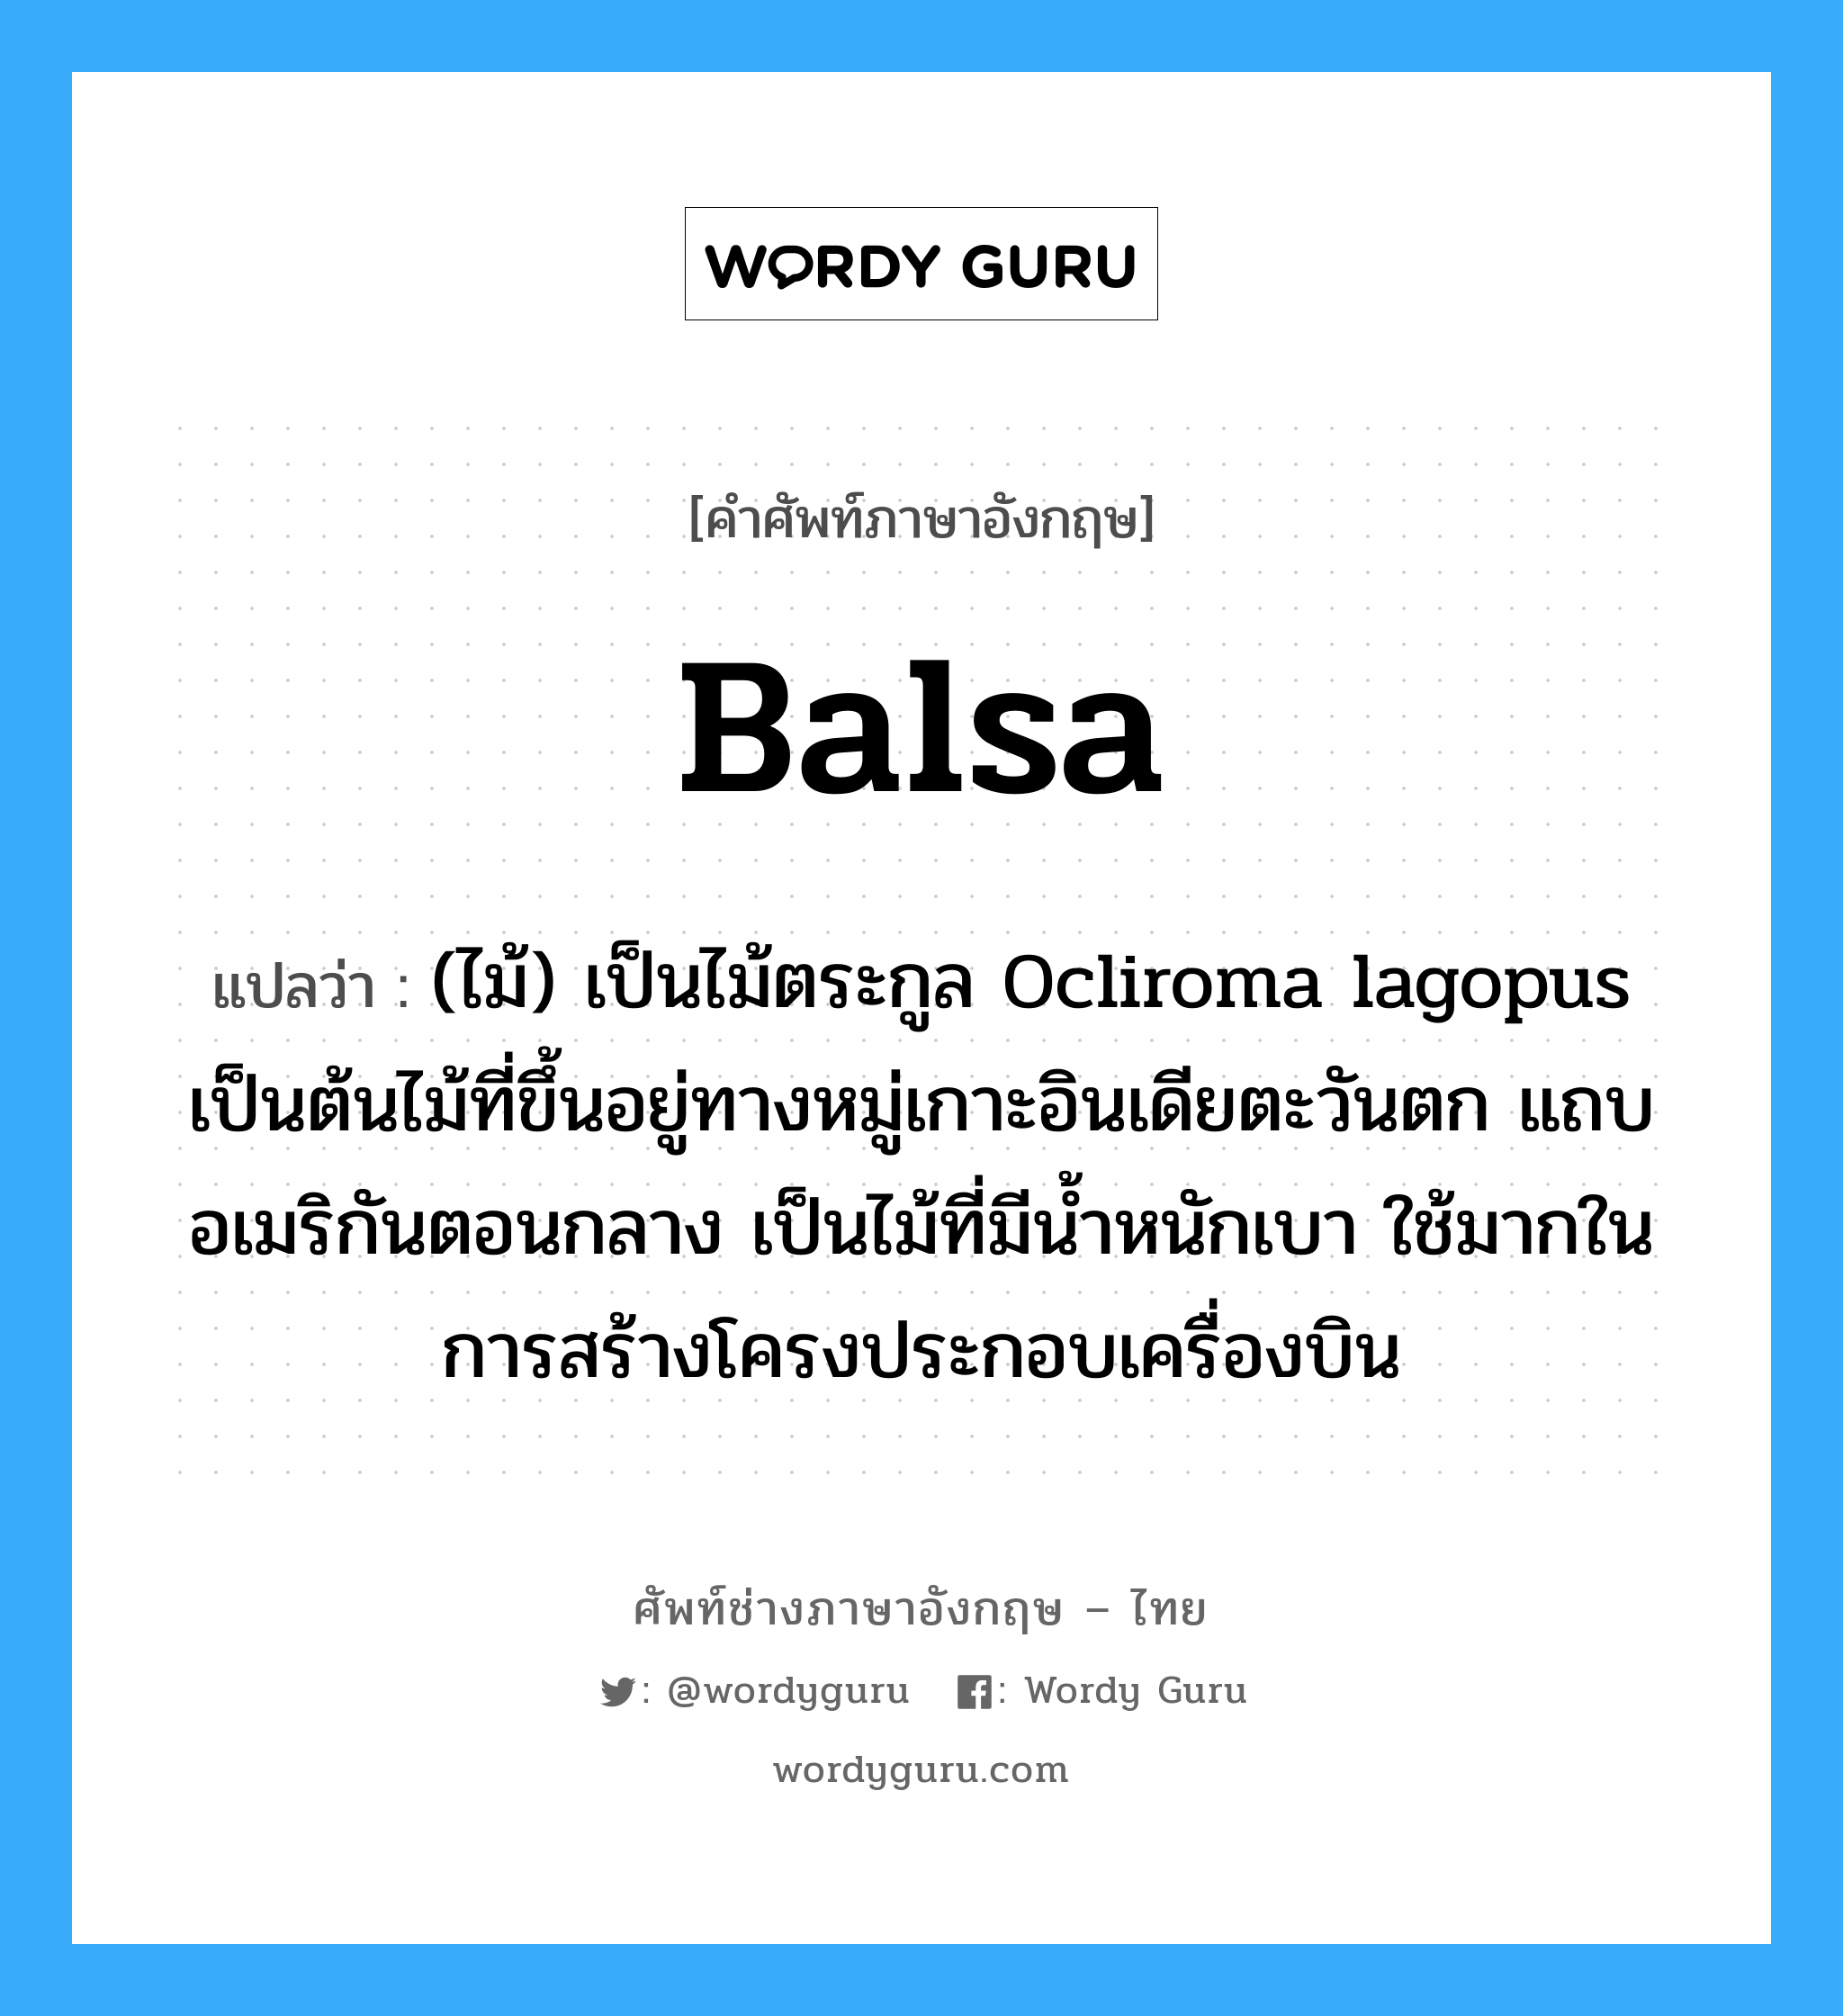 balsa แปลว่า?, คำศัพท์ช่างภาษาอังกฤษ - ไทย balsa คำศัพท์ภาษาอังกฤษ balsa แปลว่า (ไม้) เป็นไม้ตระกูล Ocliroma lagopus เป็นต้นไม้ที่ขึ้นอยู่ทางหมู่เกาะอินเดียตะวันตก แถบอเมริกันตอนกลาง เป็นไม้ที่มีน้ำหนักเบา ใช้มากในการสร้างโครงประกอบเครื่องบิน